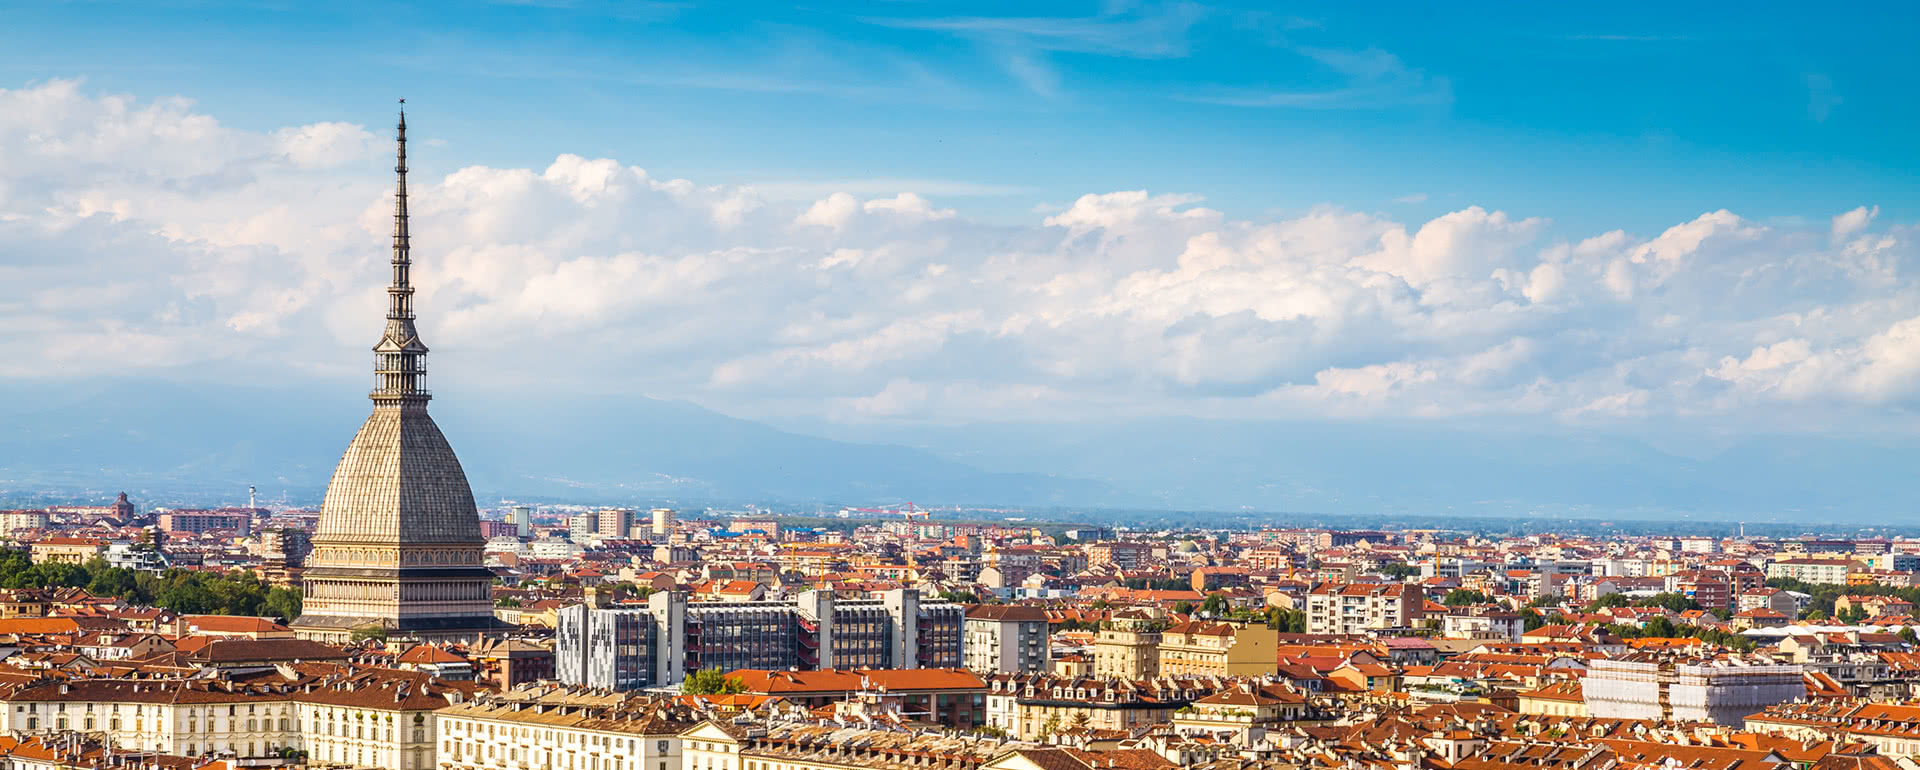 Coverbild von Torino